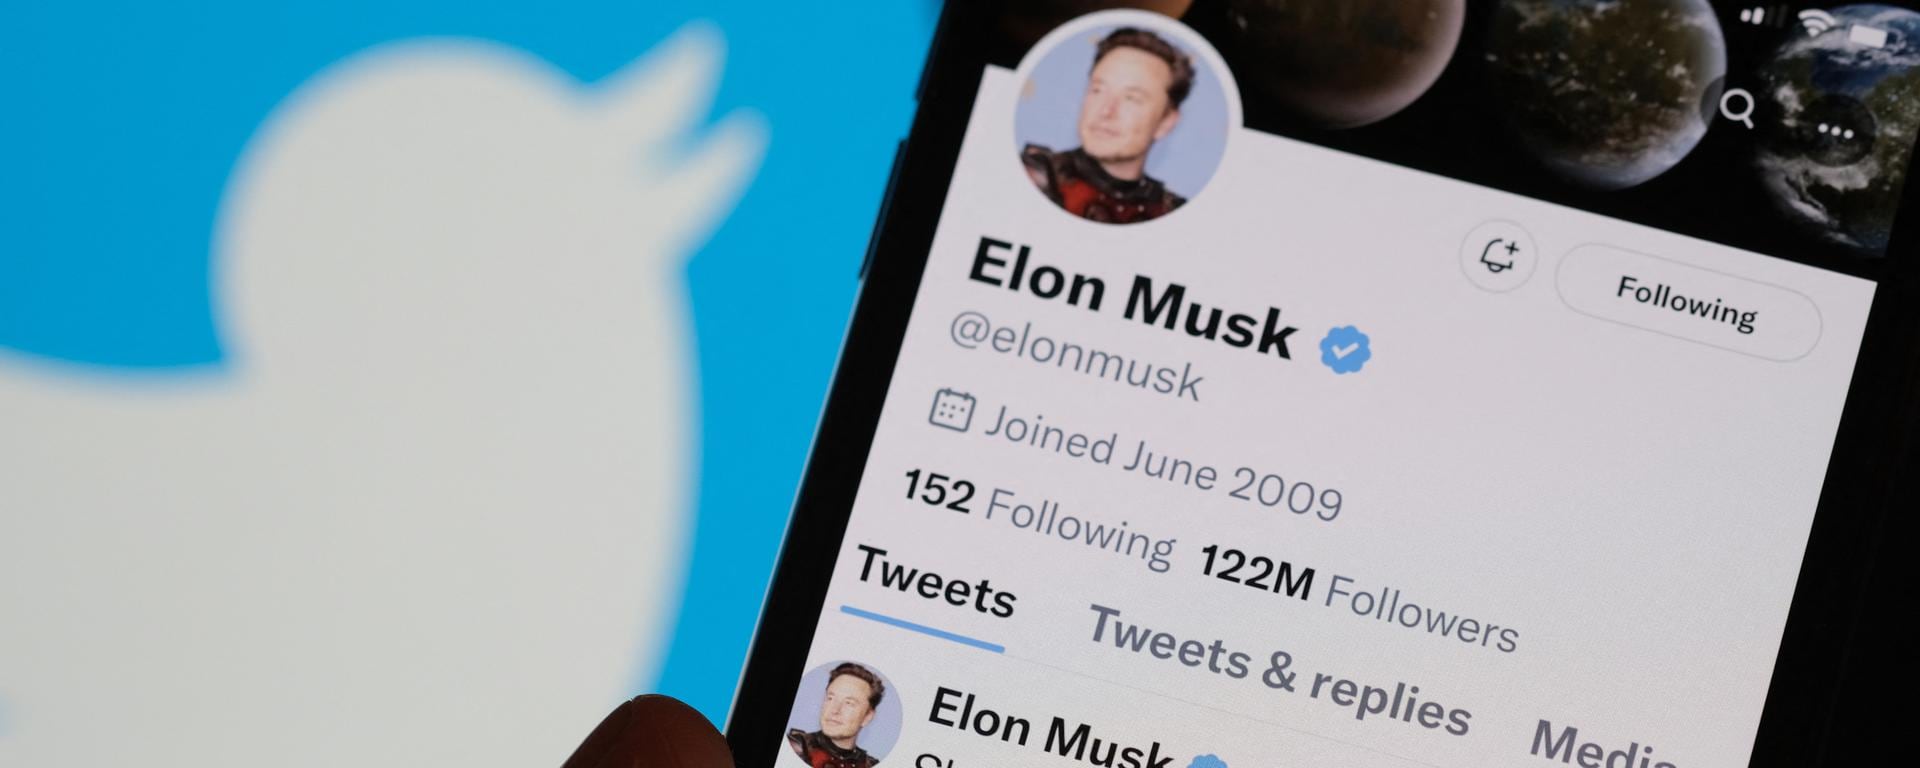 Elon Musk quiere más y más suscripciones en Twitter: ¿realmente se convertirá en la “app para todo”?